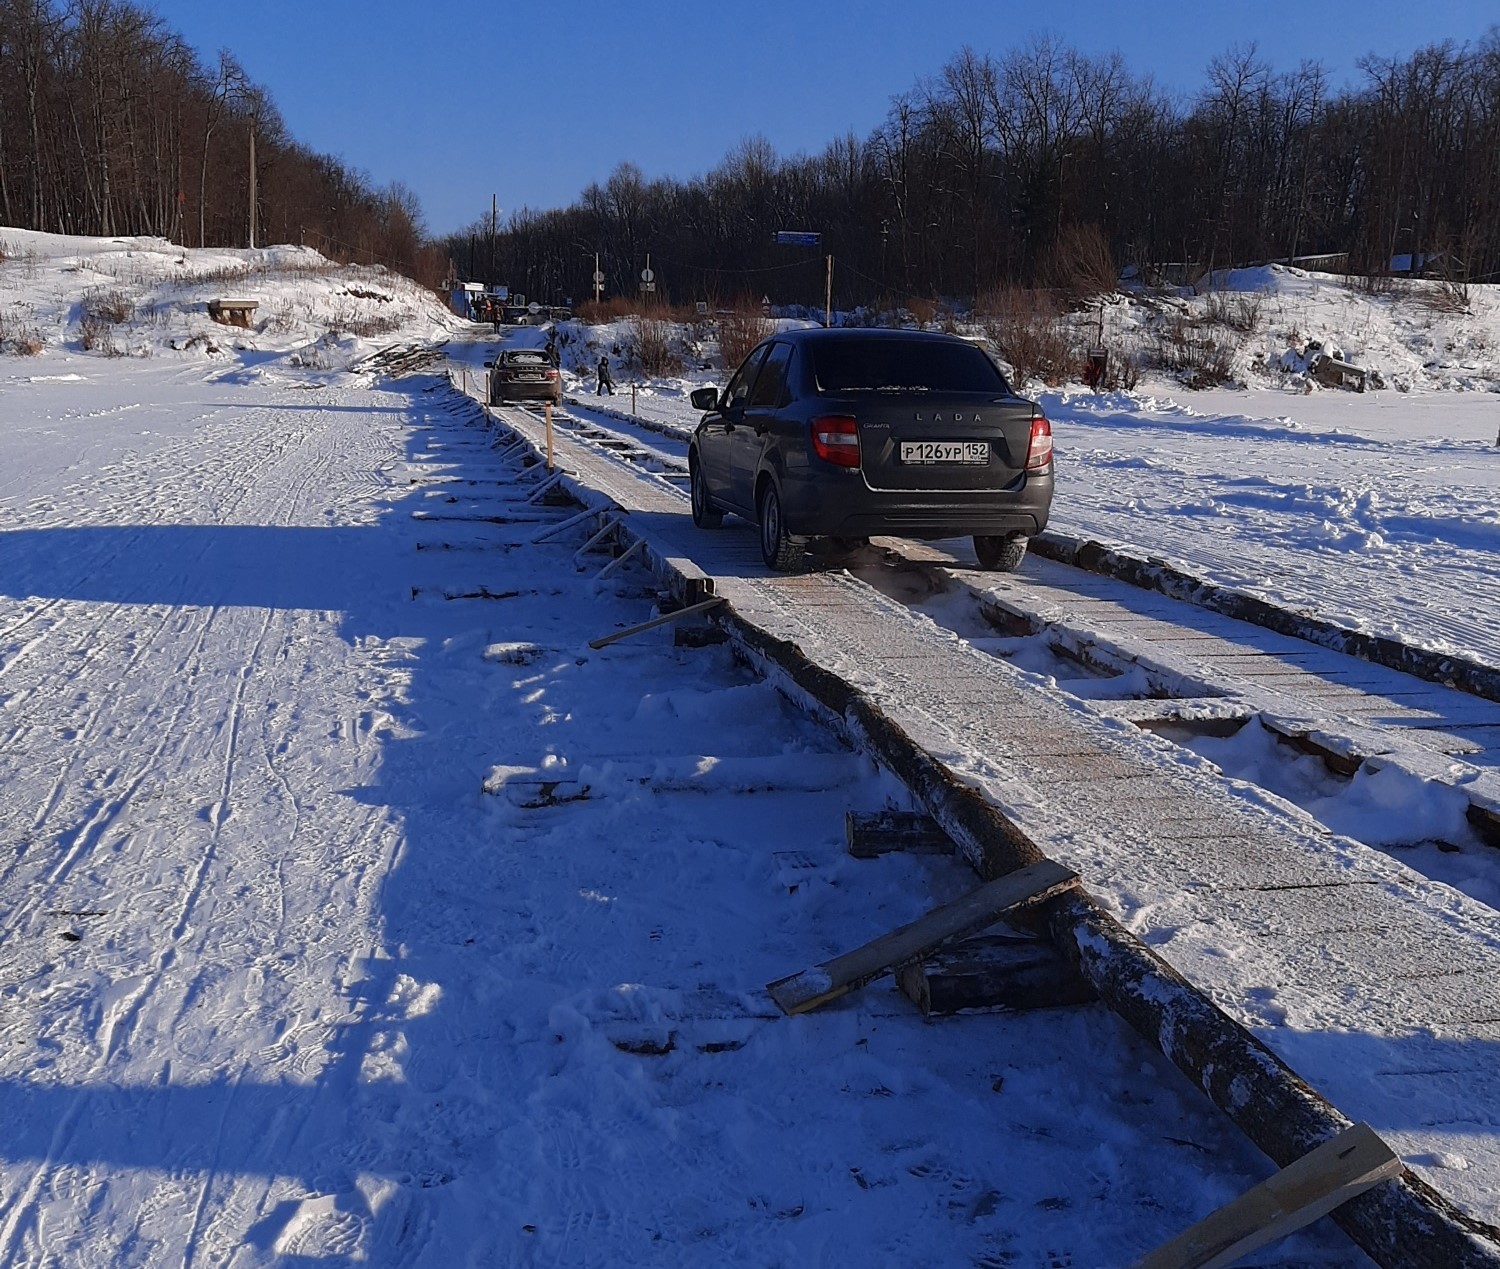 Ледовую переправу открыли между Нижегородской областью и Чувашией